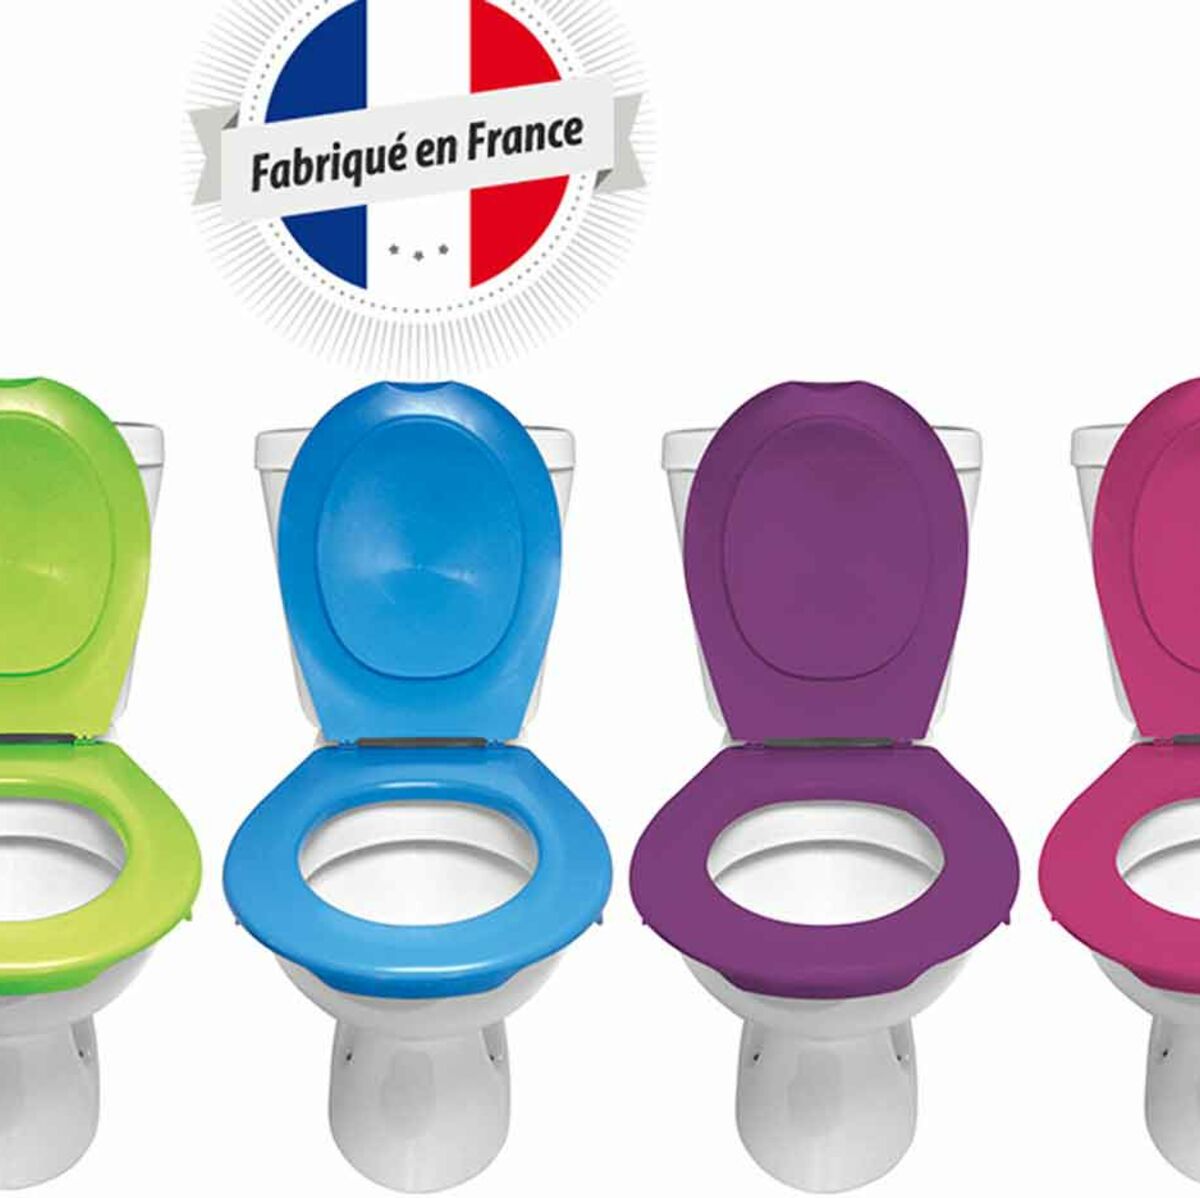 PAPADO ® • Lunette & Abattant de WC Clipsables Made in France